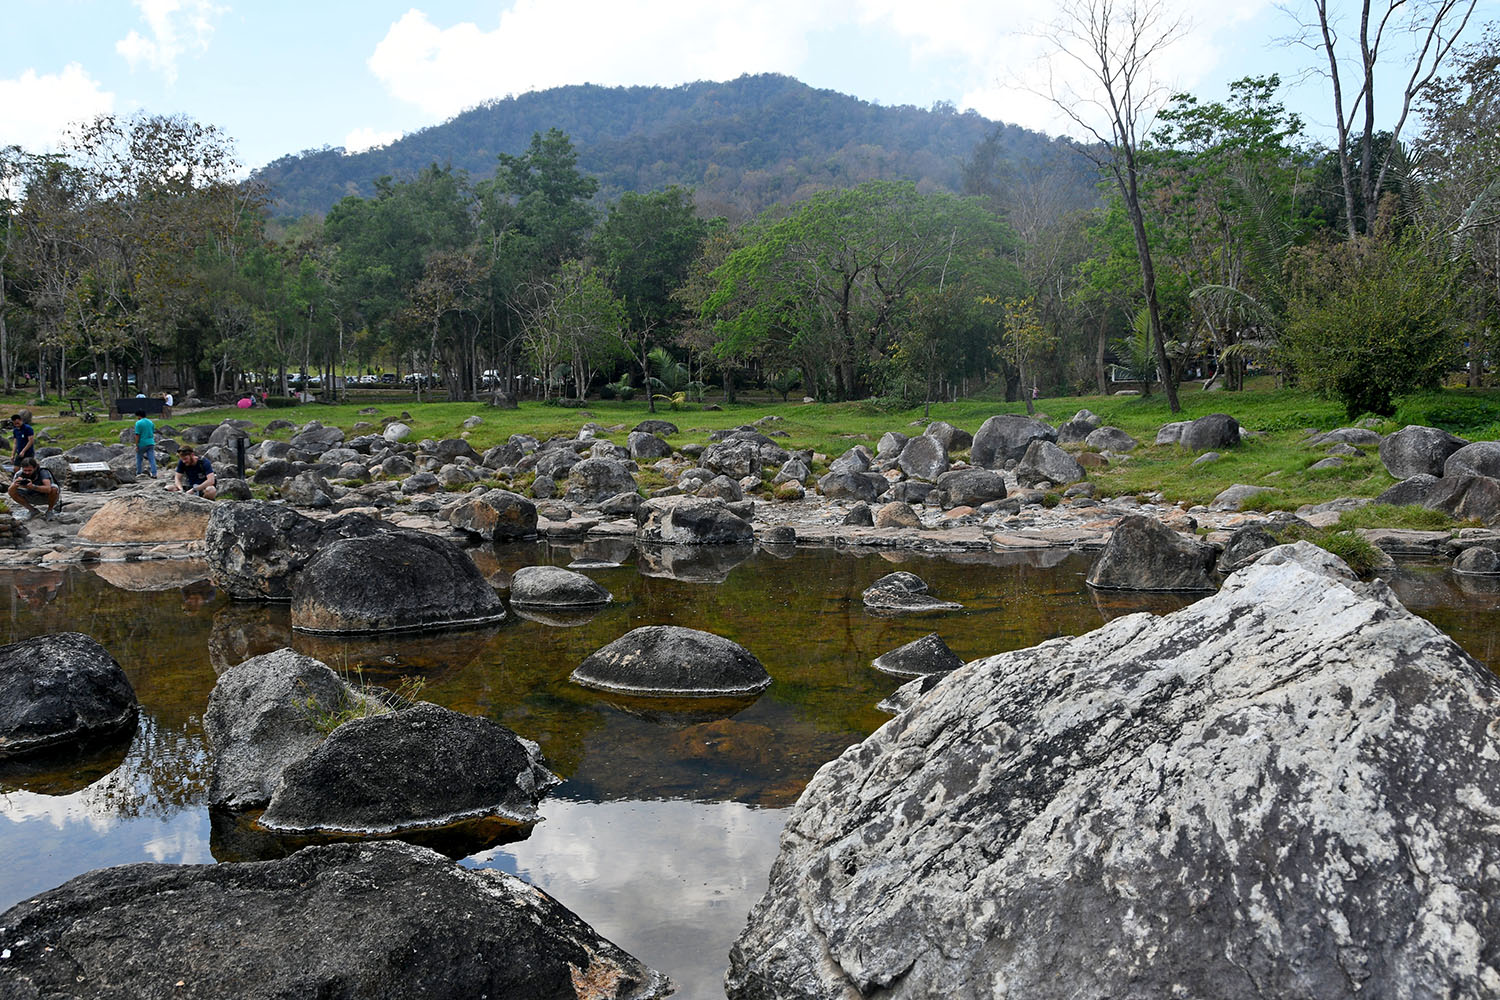 蔡山温泉公园从泰国清迈出发的偏僻路线一日游